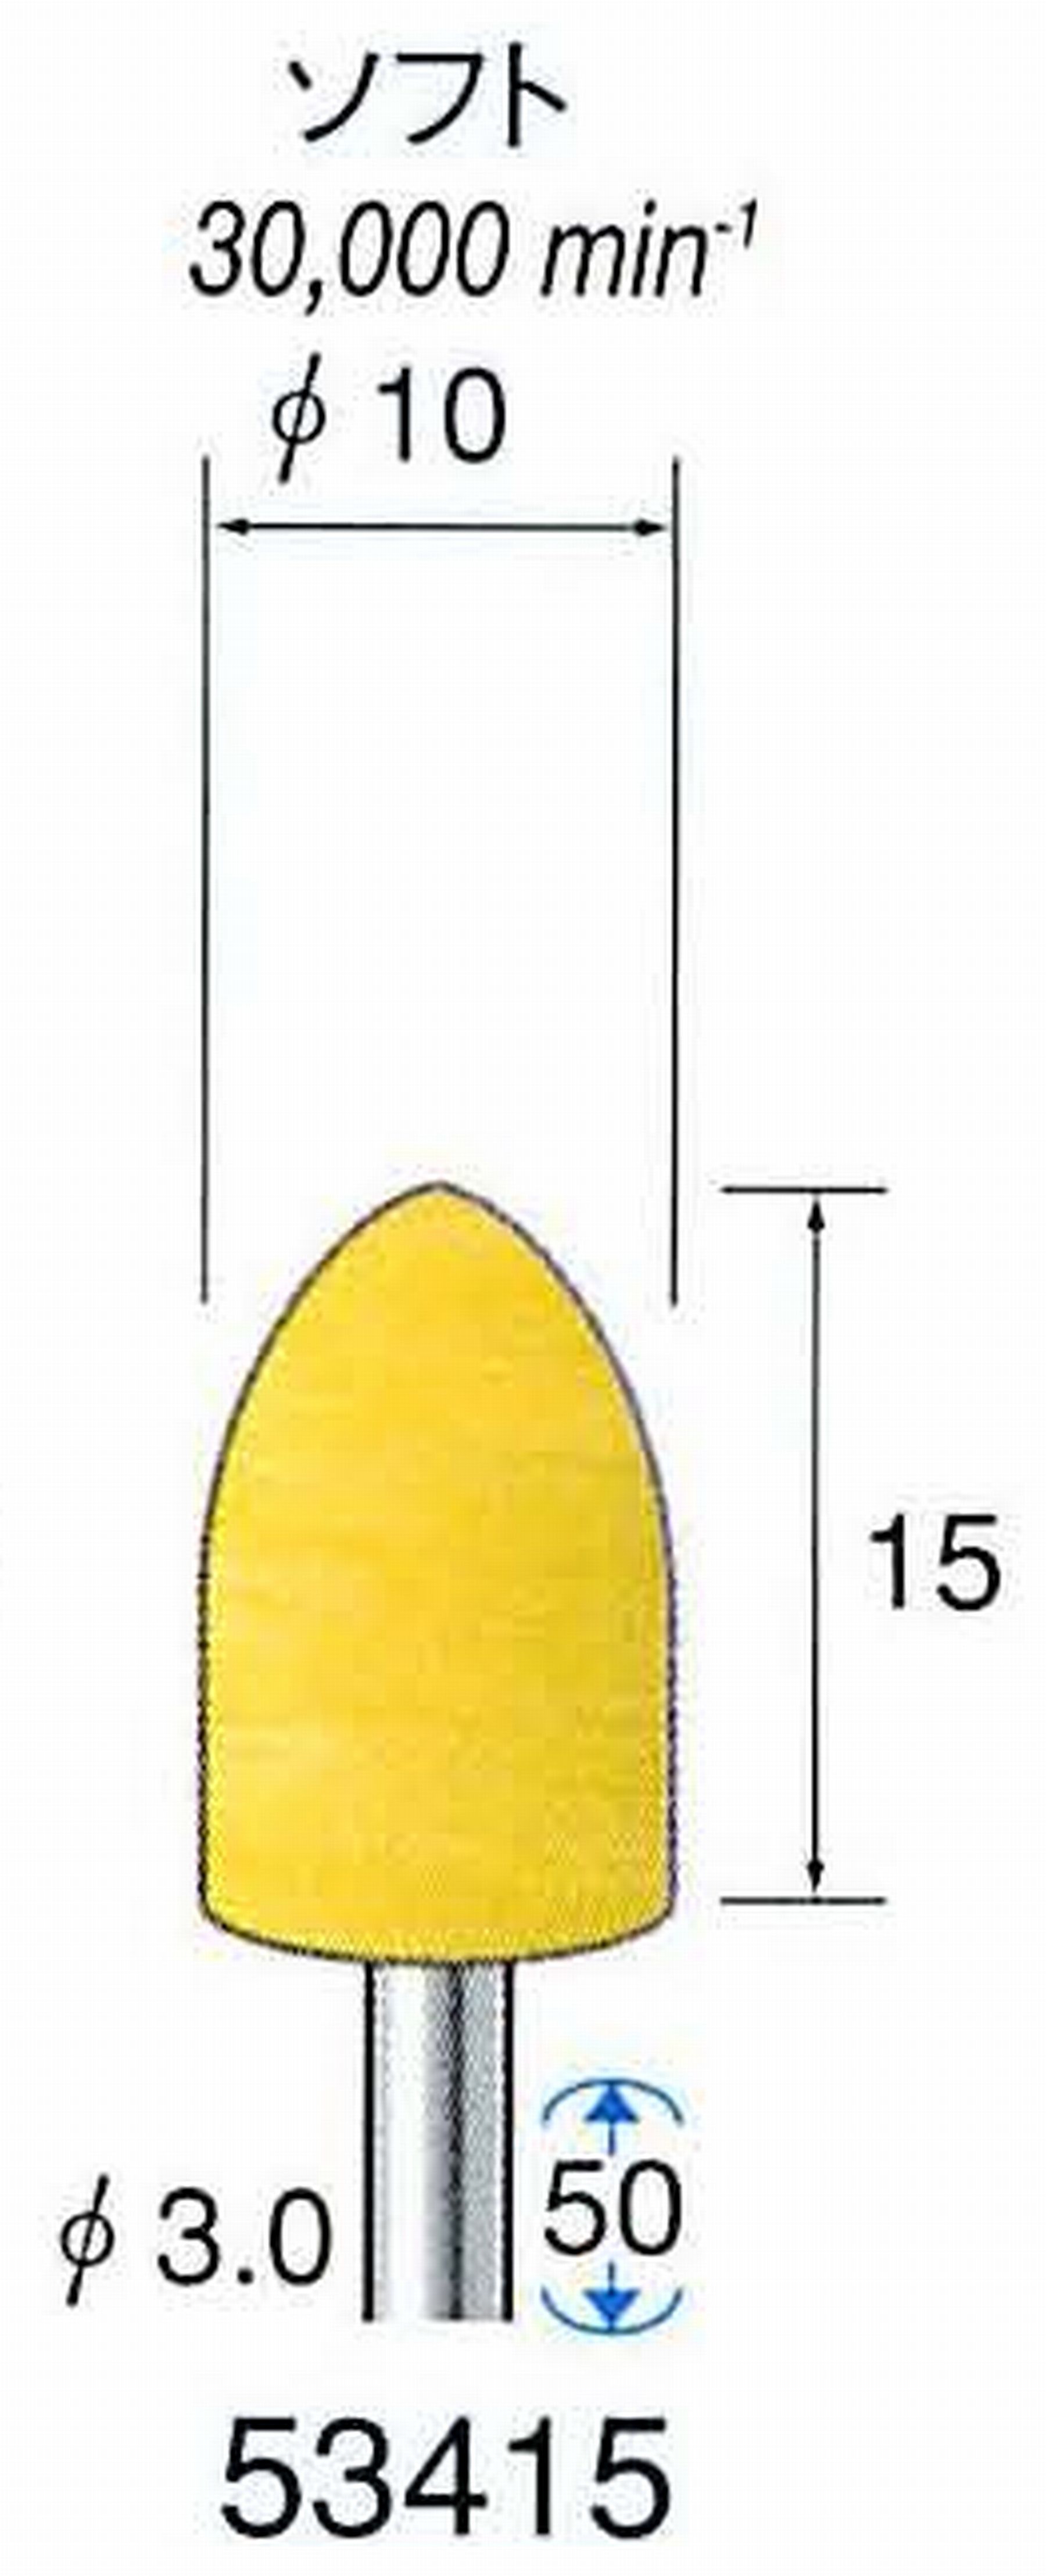 ナカニシ/NAKANISHI イエローフェルトバフ ソフト(研磨材入り) WA(アルミナ)含浸タイプ 軸径(シャンク)φ3.0mm 53415